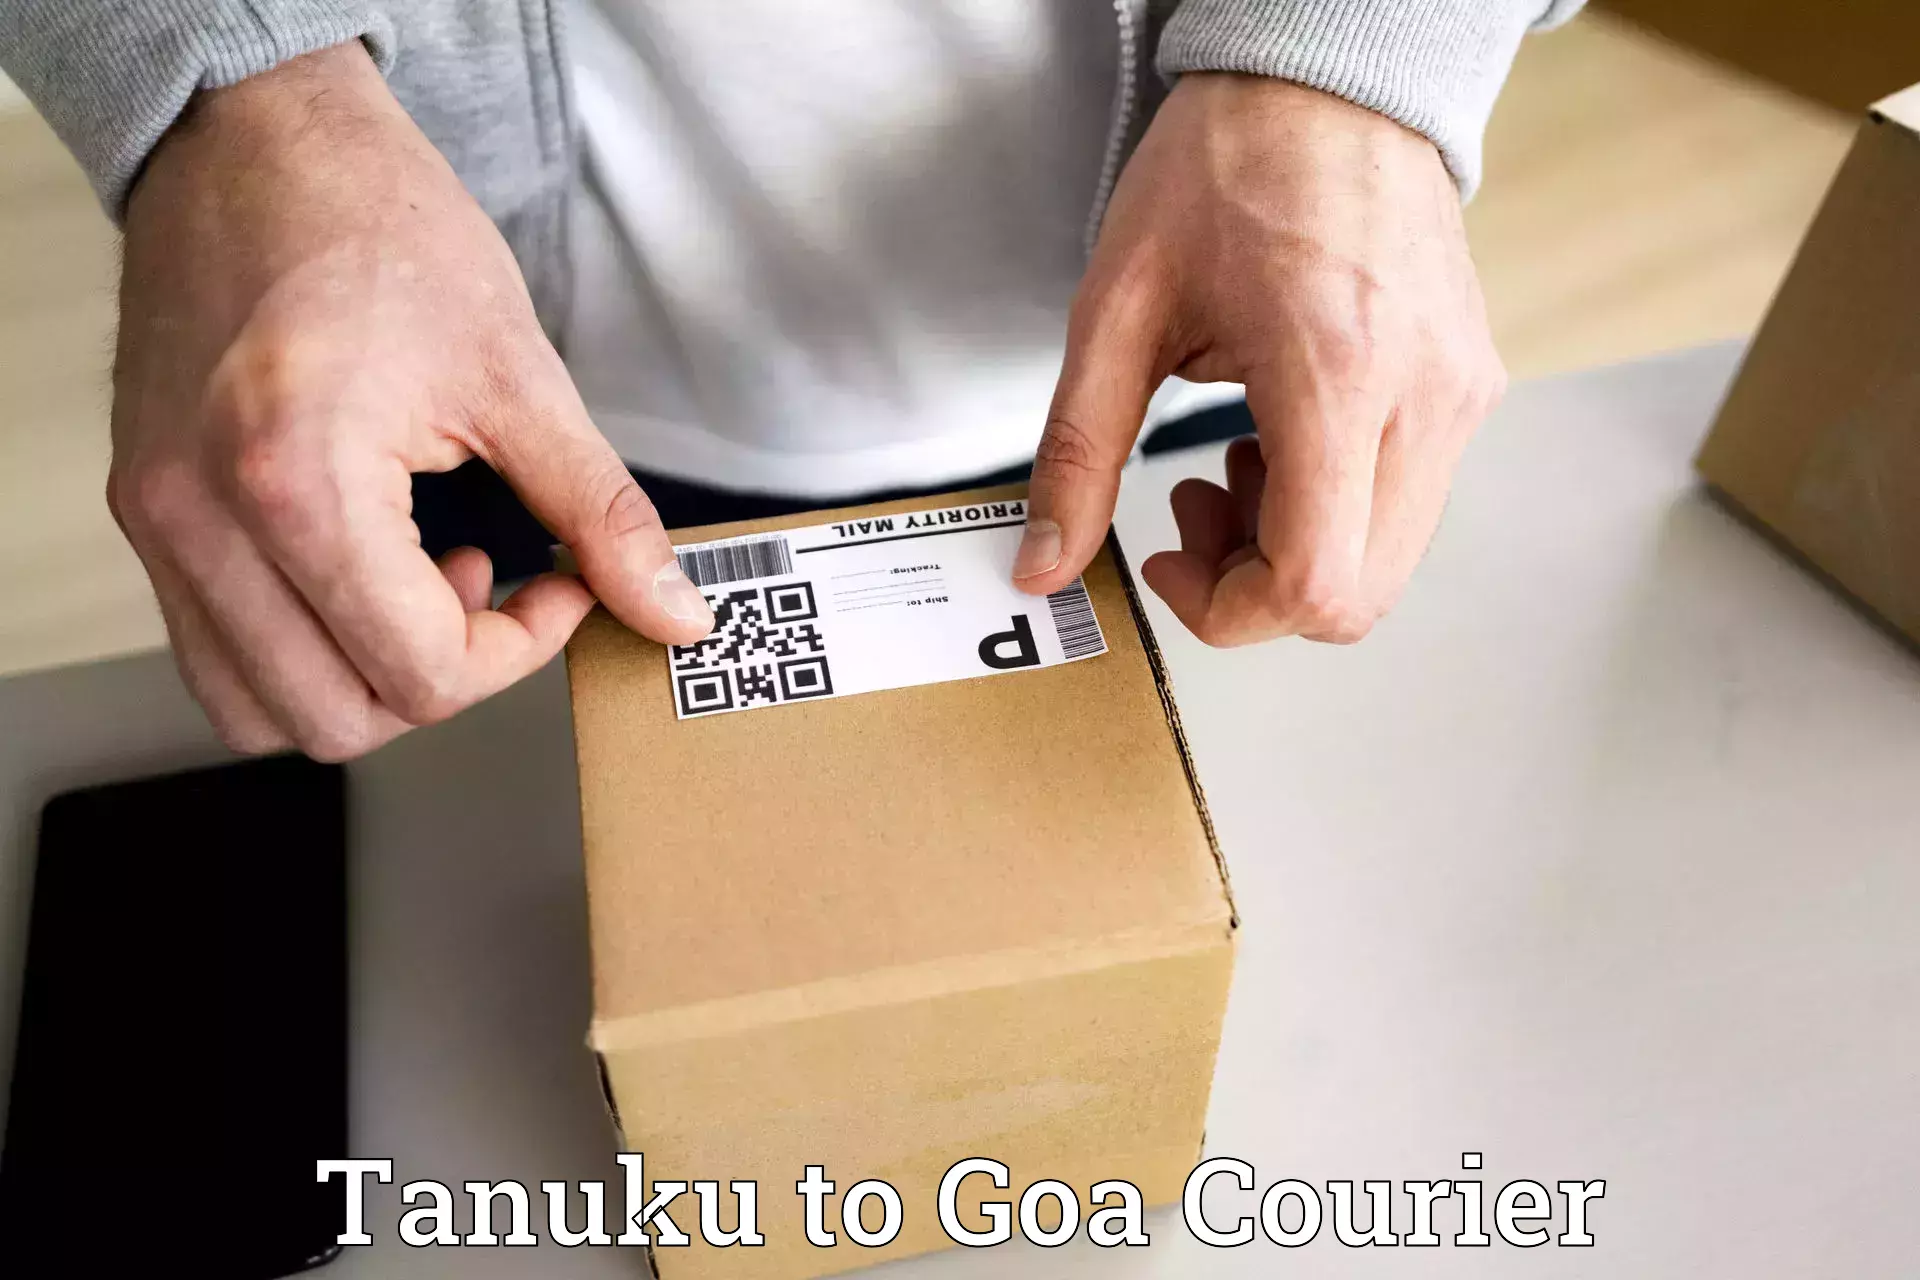 Enhanced tracking features Tanuku to South Goa